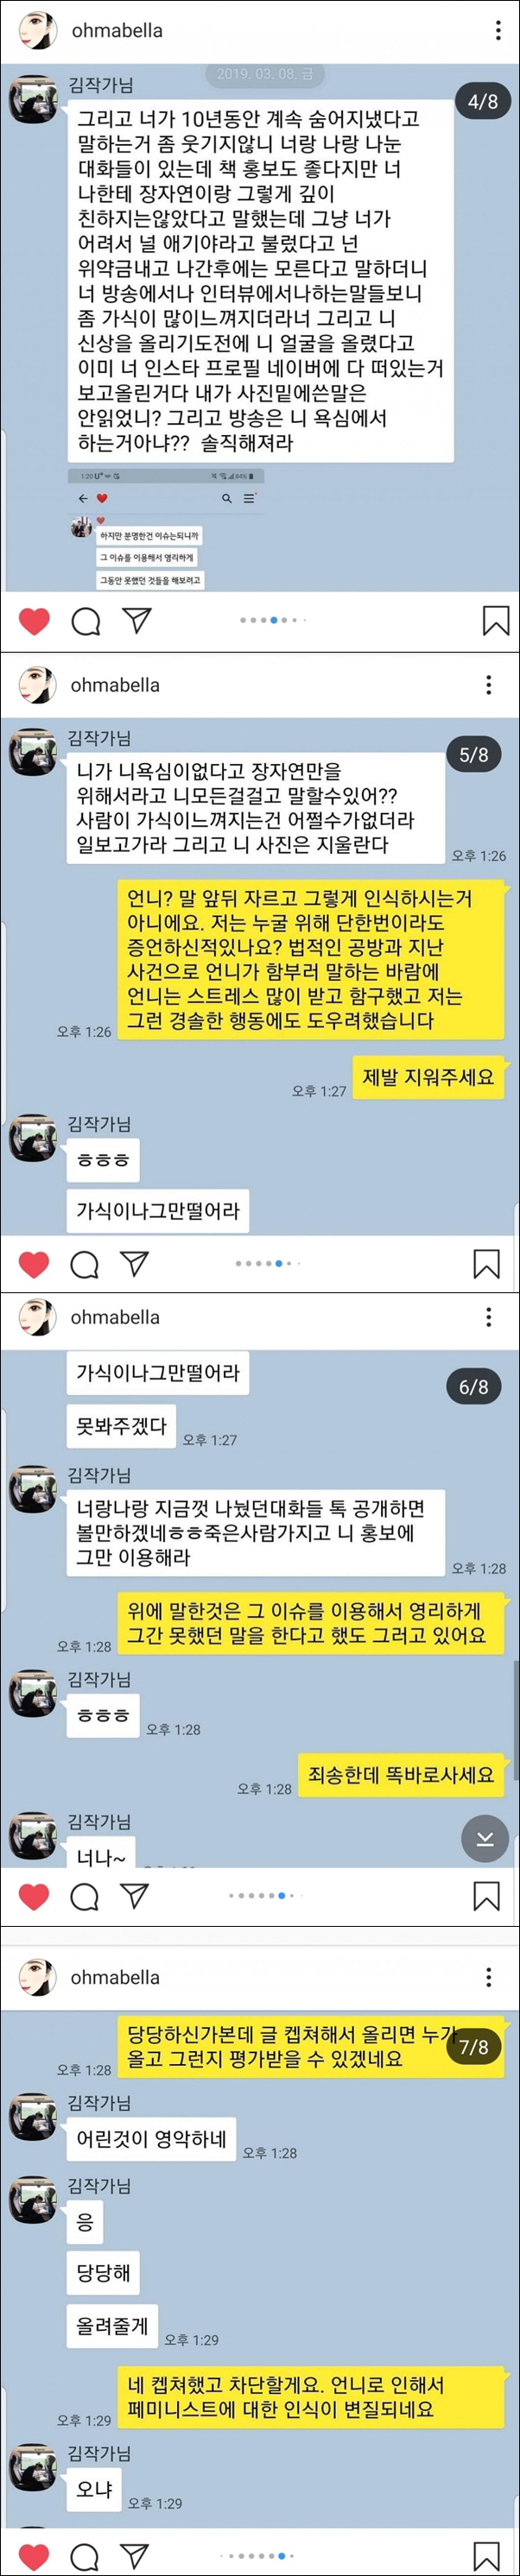 공개된 윤지오씨와 김수민 작가의 카카오톡 대화내용